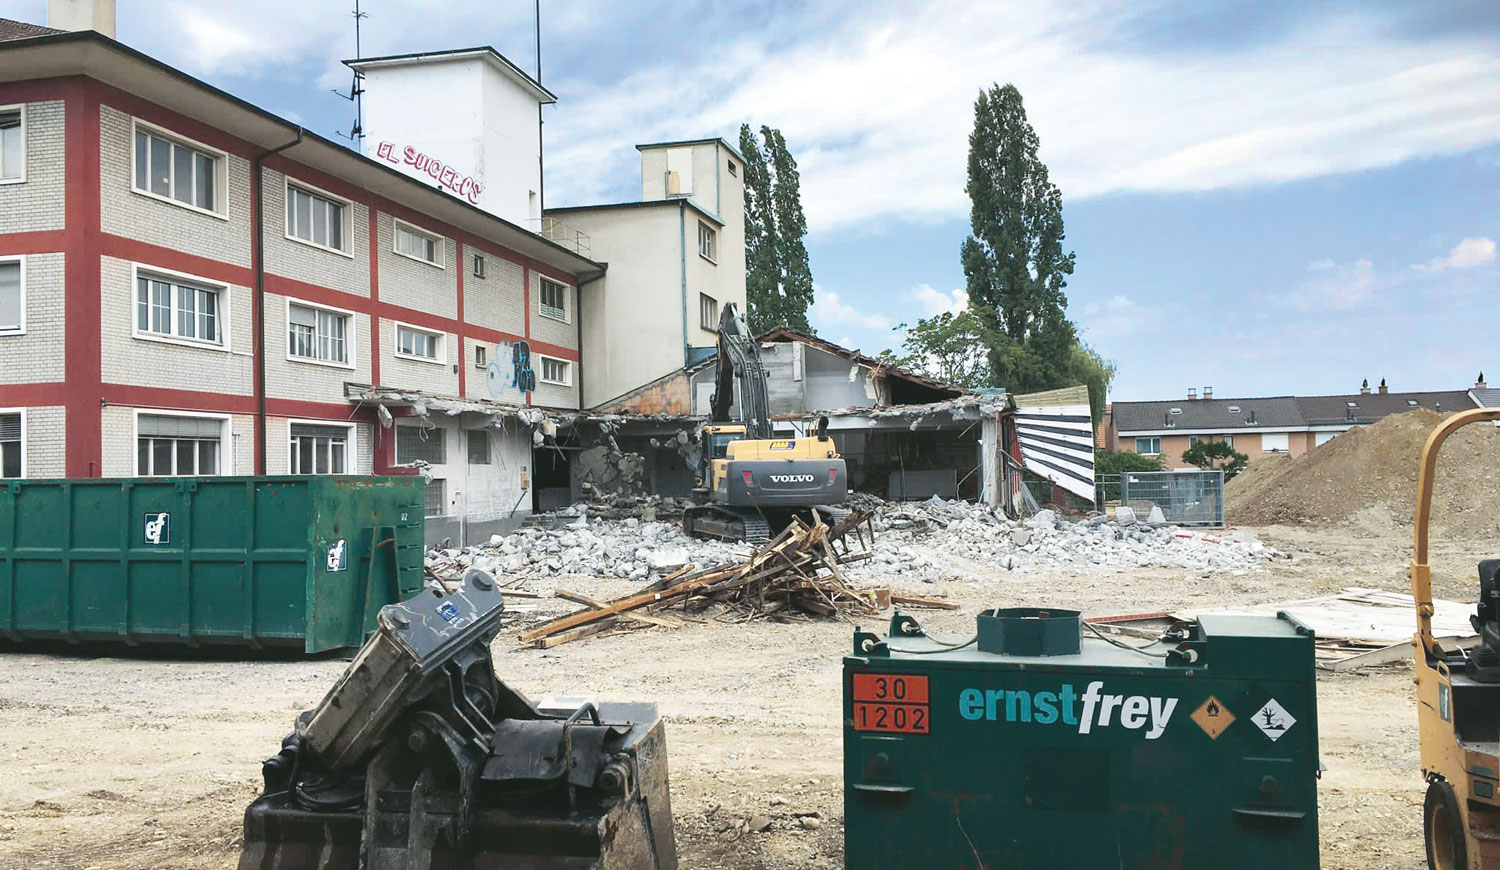 Umbau und Sanierung Plus | Abbruch & Schadstoffsanierung | Eine Erfolgsgeschichte der Ernst Frey AG: In Muttenz haben wir einen Gebäudeabbruch mit einer anspruchsvollen Schadstoffsanierung realisiert. Jetzt weiterlesen.